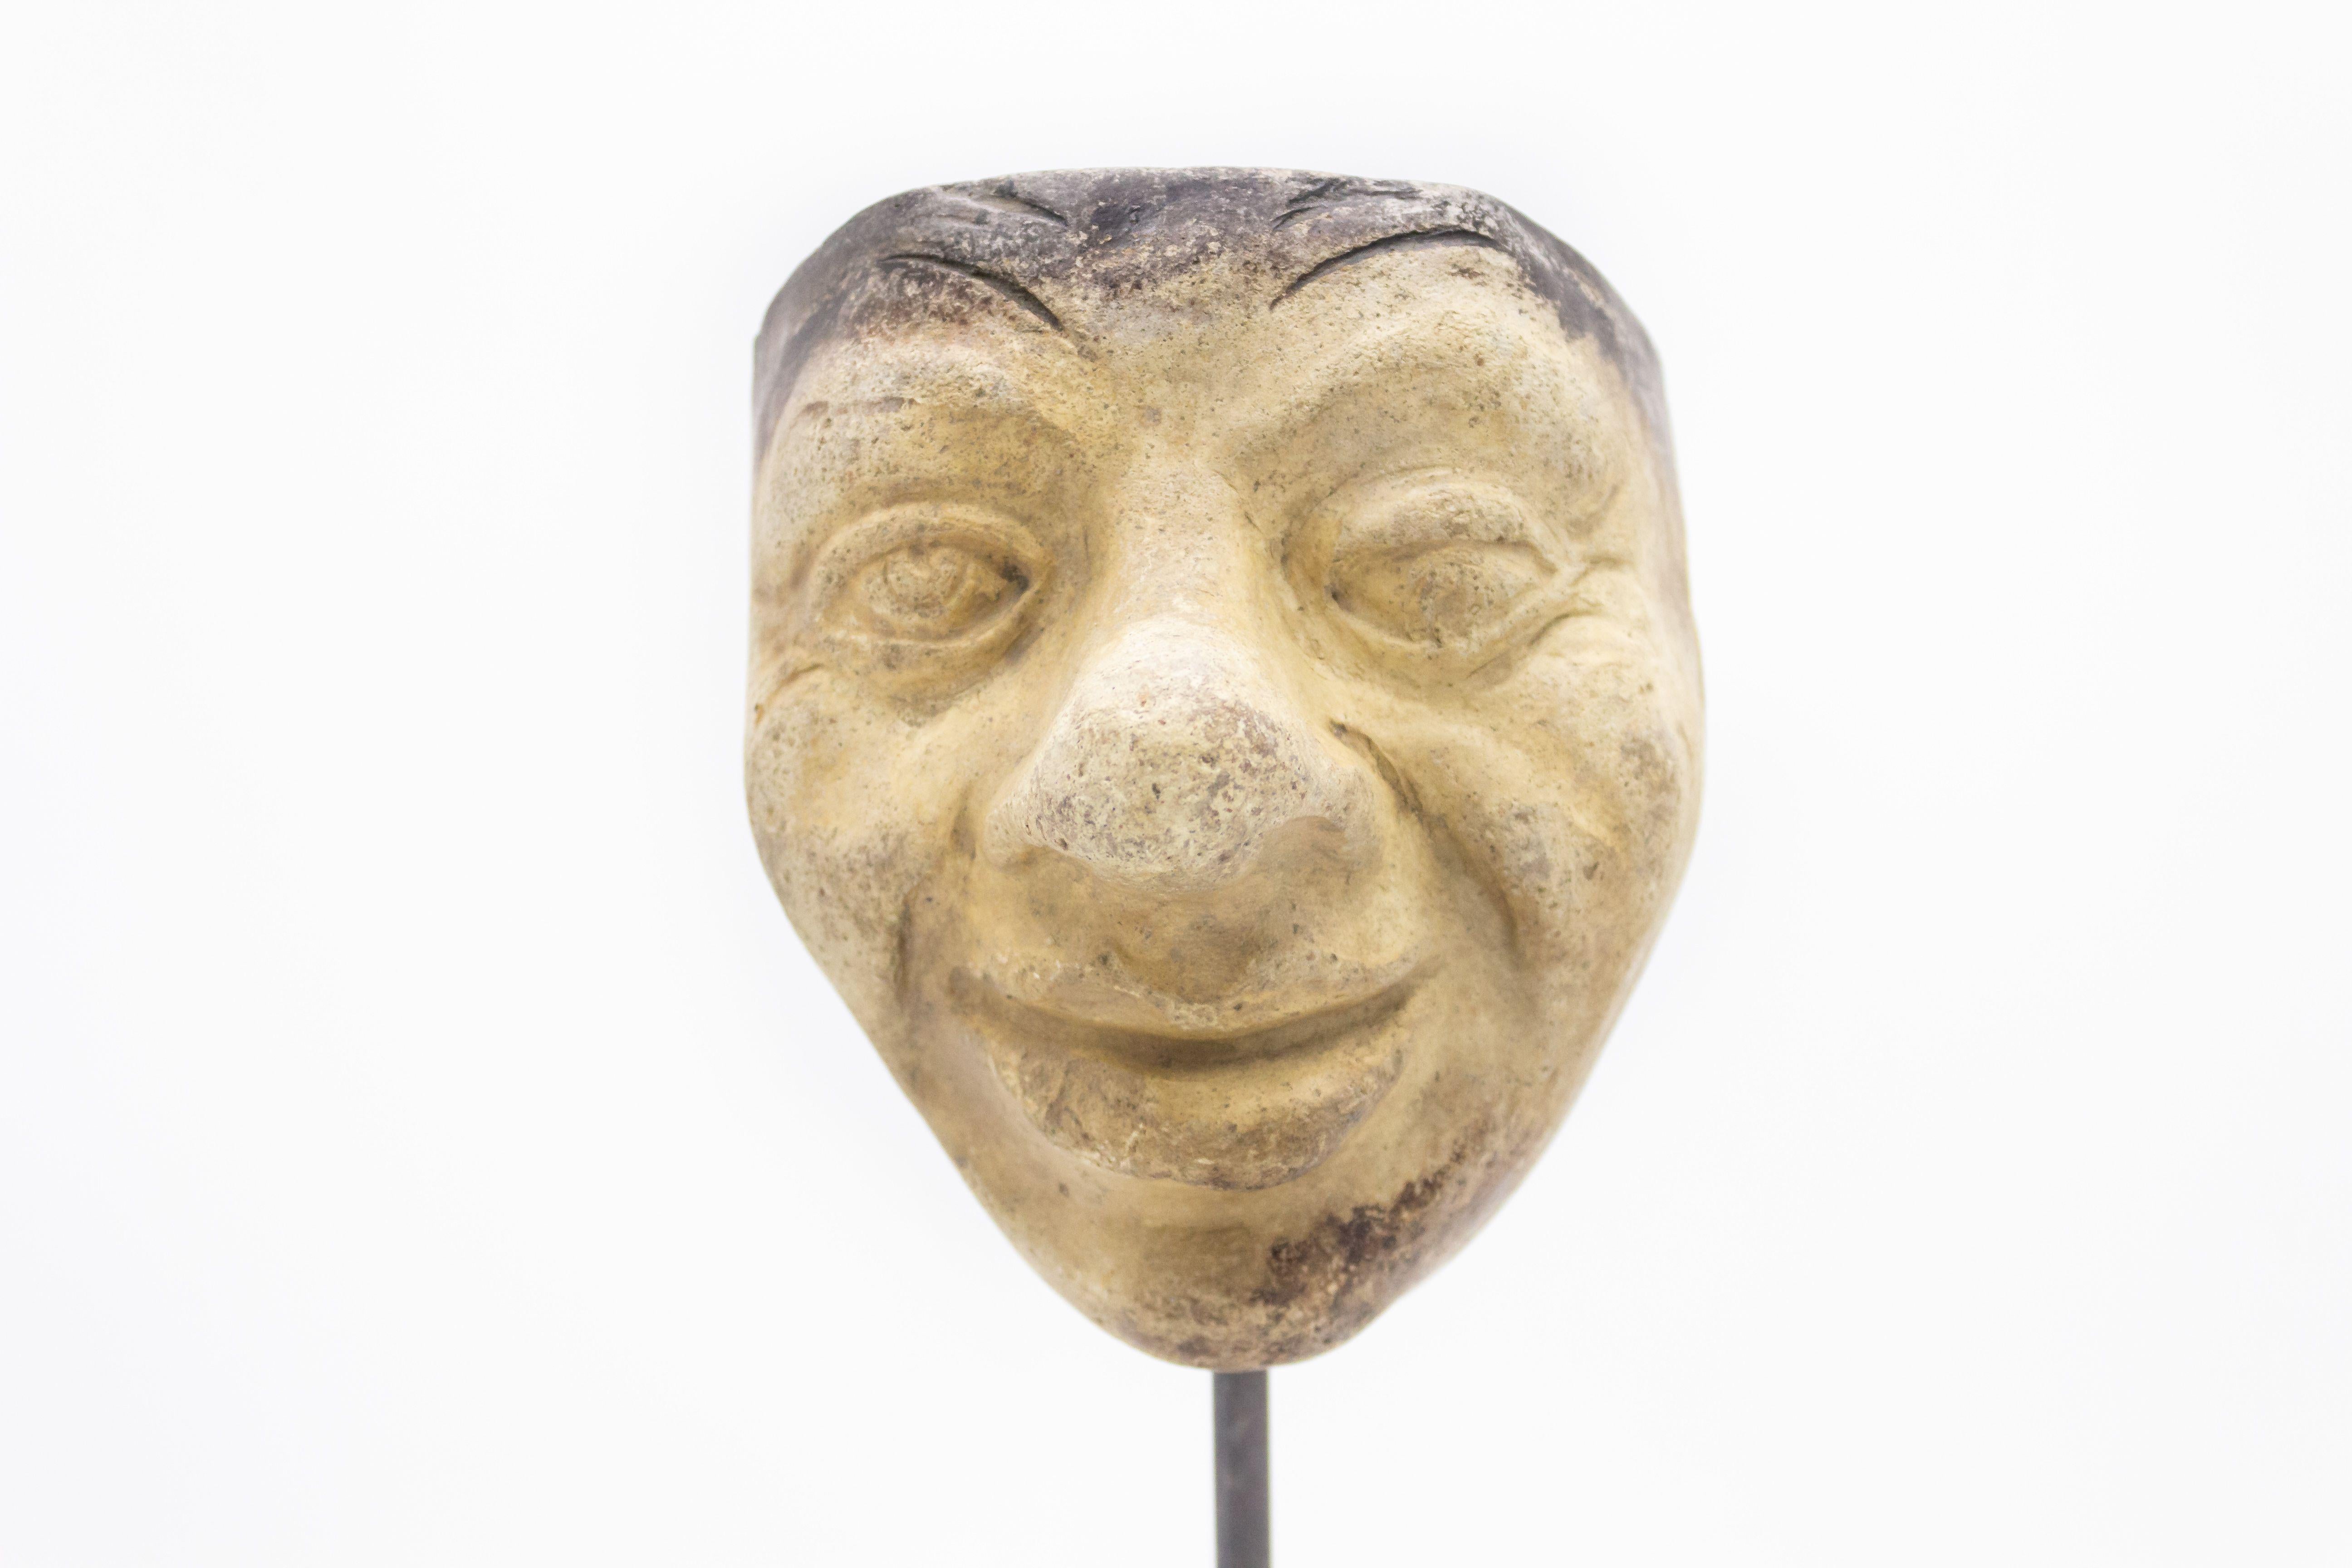 Kontinentaldeutsche (spätes 19. Jh.) Terrakotta-Maskenform eines lächelnden Groteskengesichts mit Knollennase auf einem quadratischen schwarzen Marmorsockel (Teil einer 39-teiligen Sammlung).
 